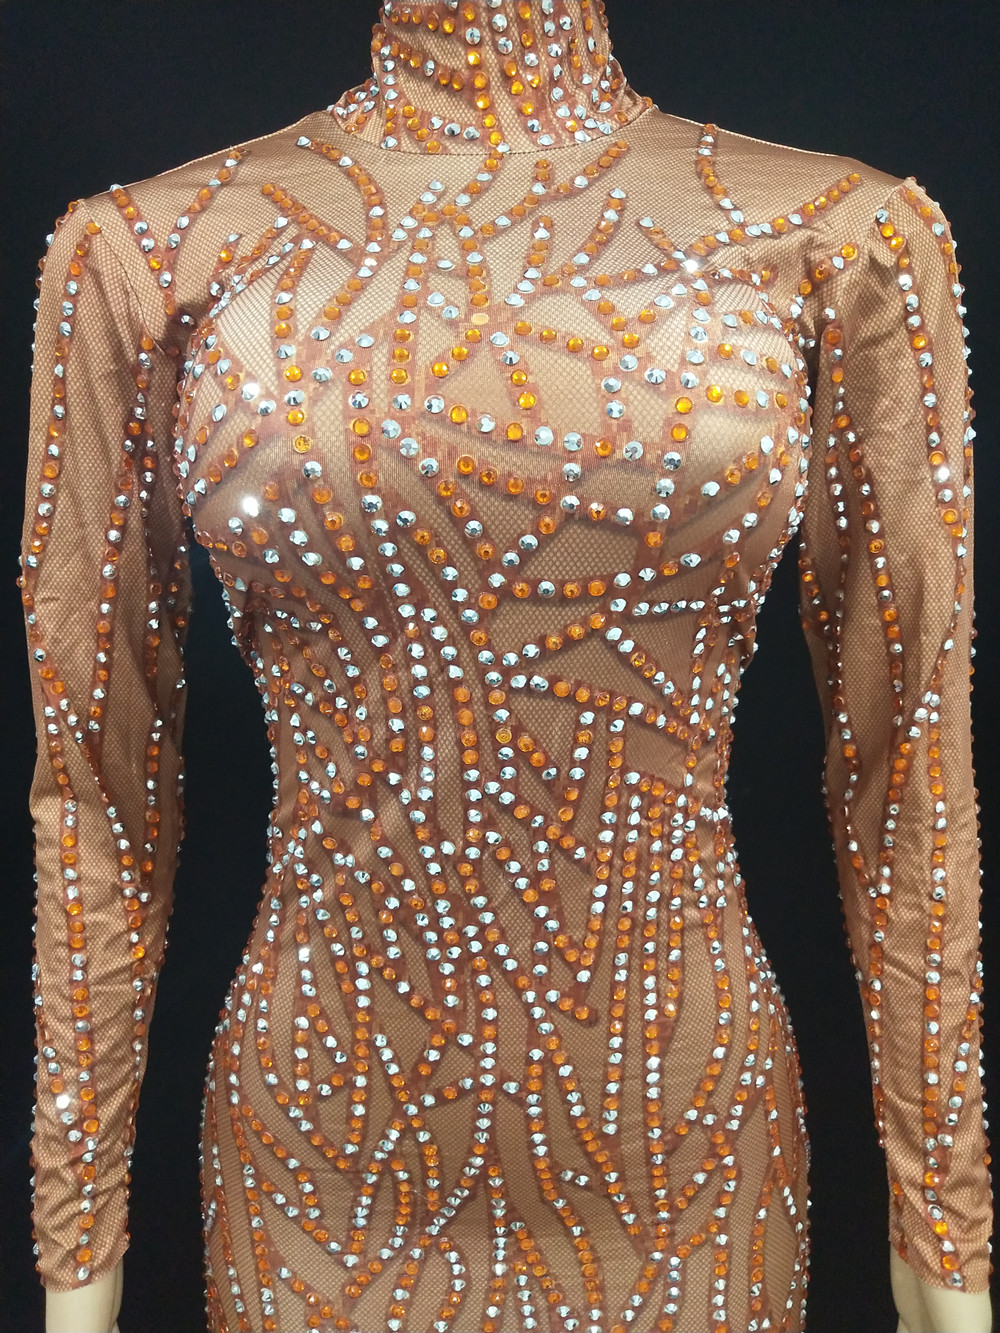 Stromstones de penas de laranja vestidos de passarela para mulheres festas de moda de moda aniversário de formatura celebrar bodycon vestido longo cantor modelo show de dança de dança